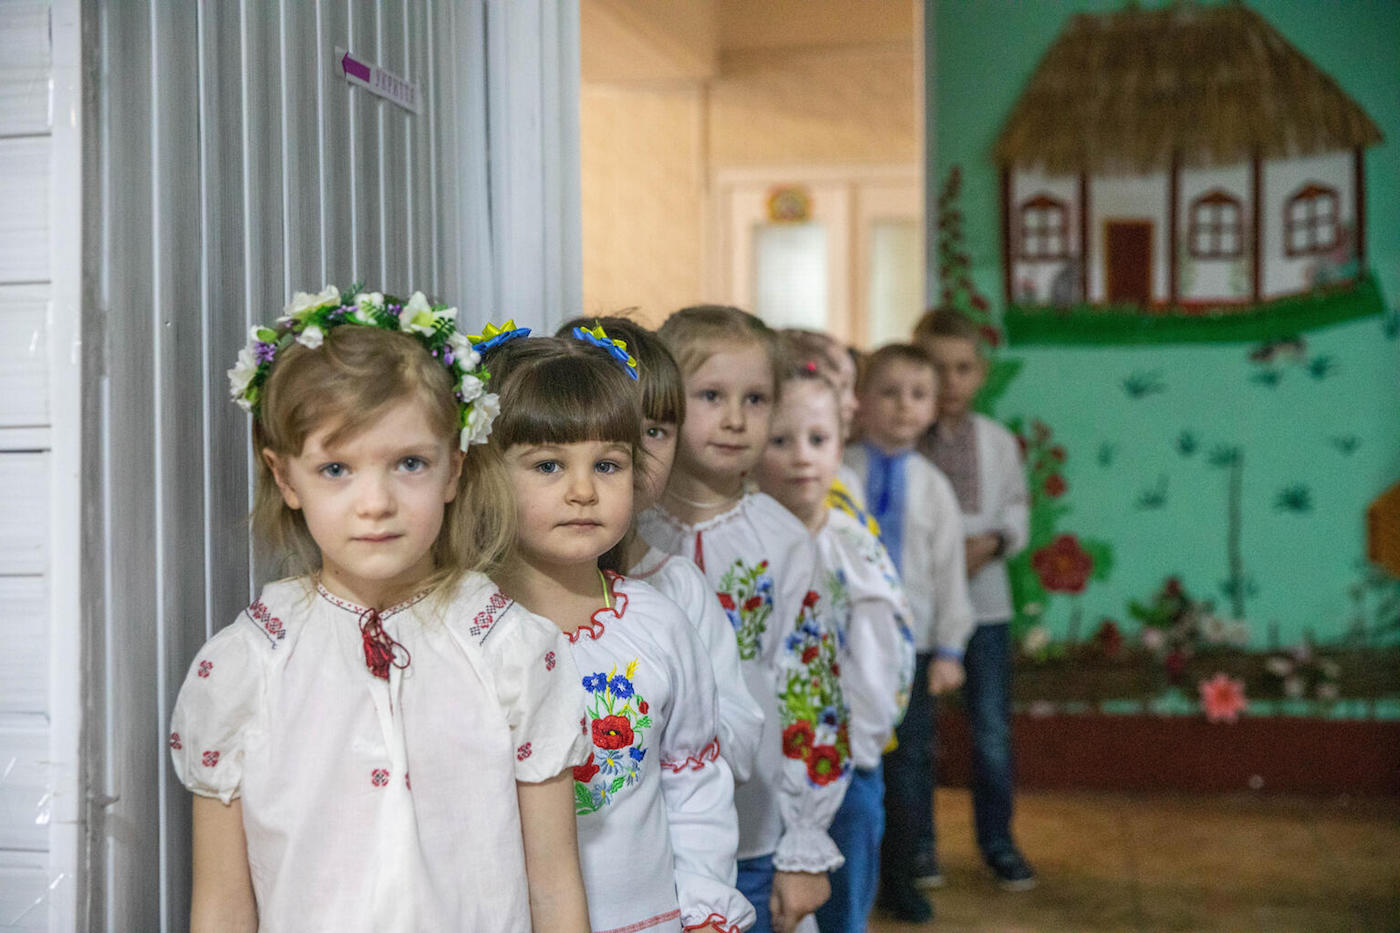 UNICEF in Ukraine Ukrainian Relief Efforts UNICEF